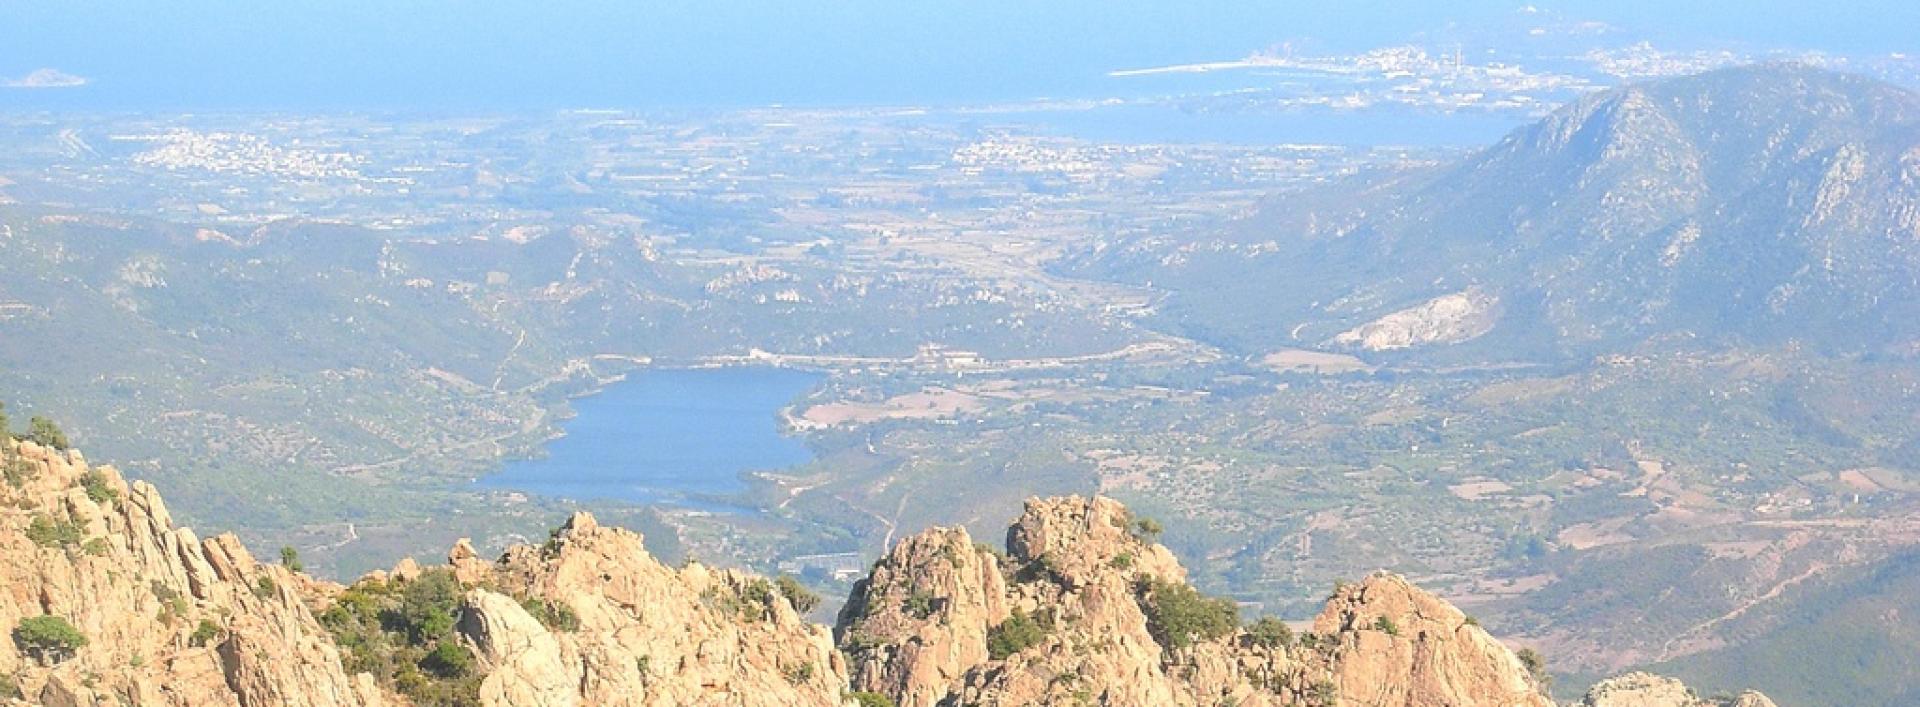 Veduta verso Arbatax  dai monti intorno a Villagrande Strisaili